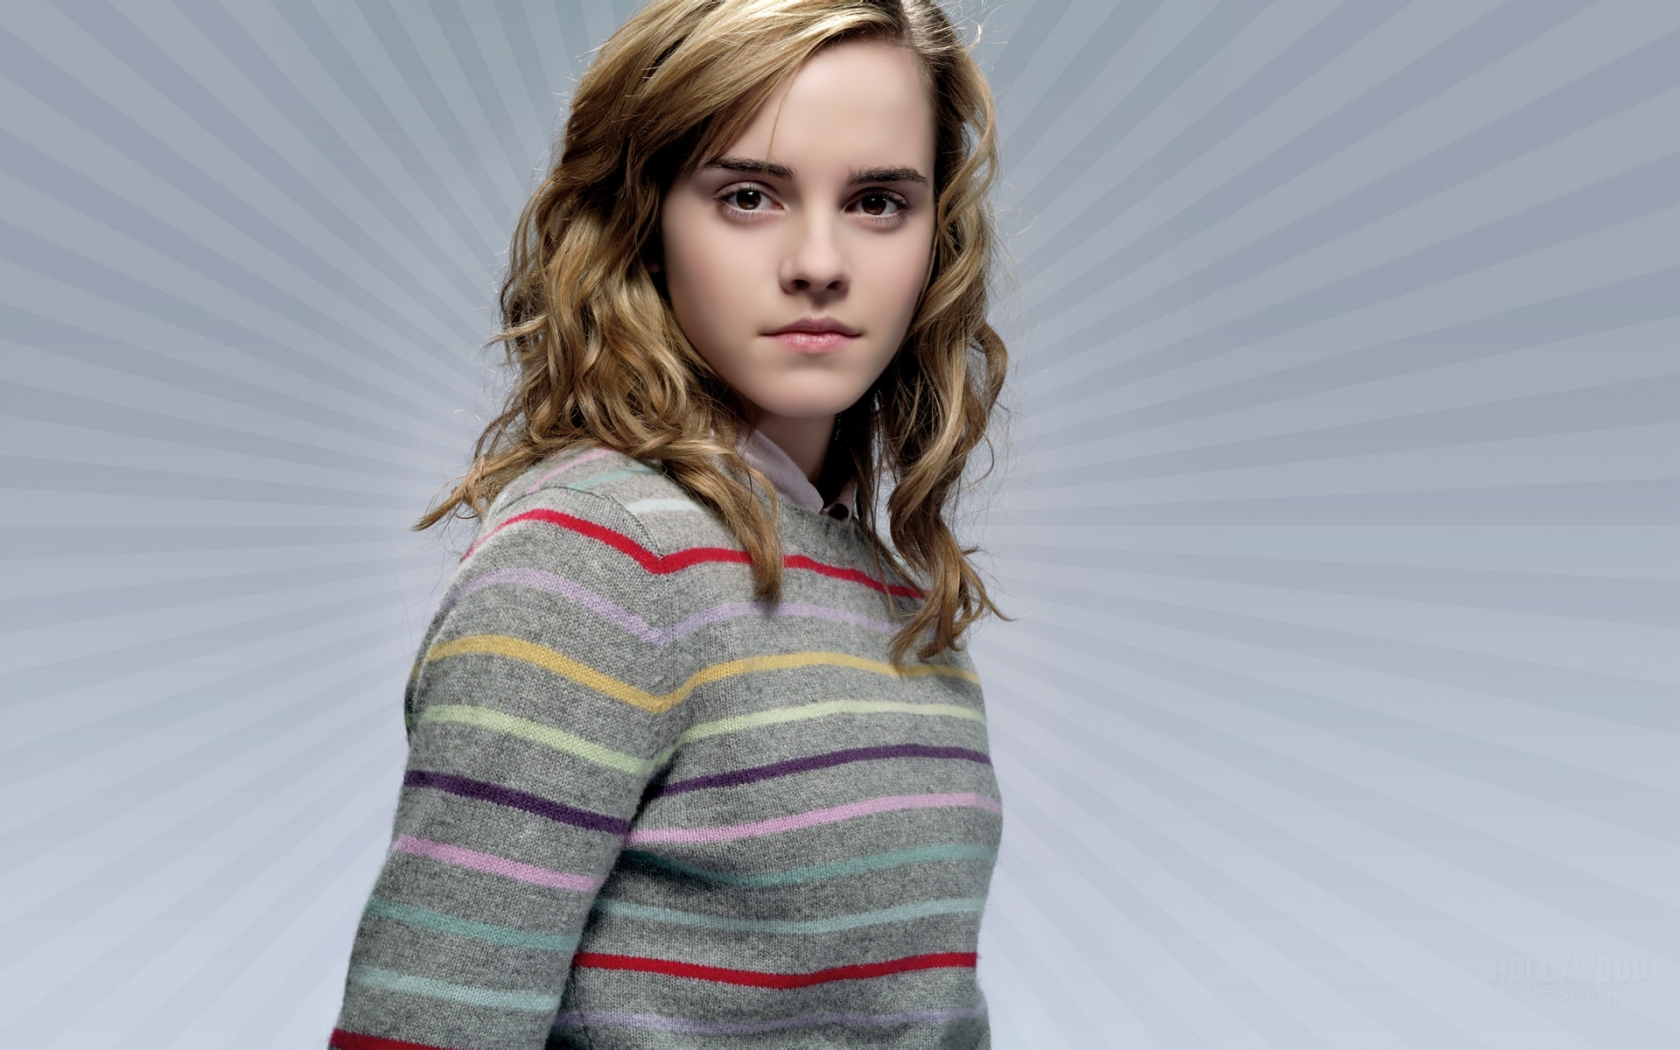 Beautiful Emma Watson for 1680 x 1050 widescreen resolution